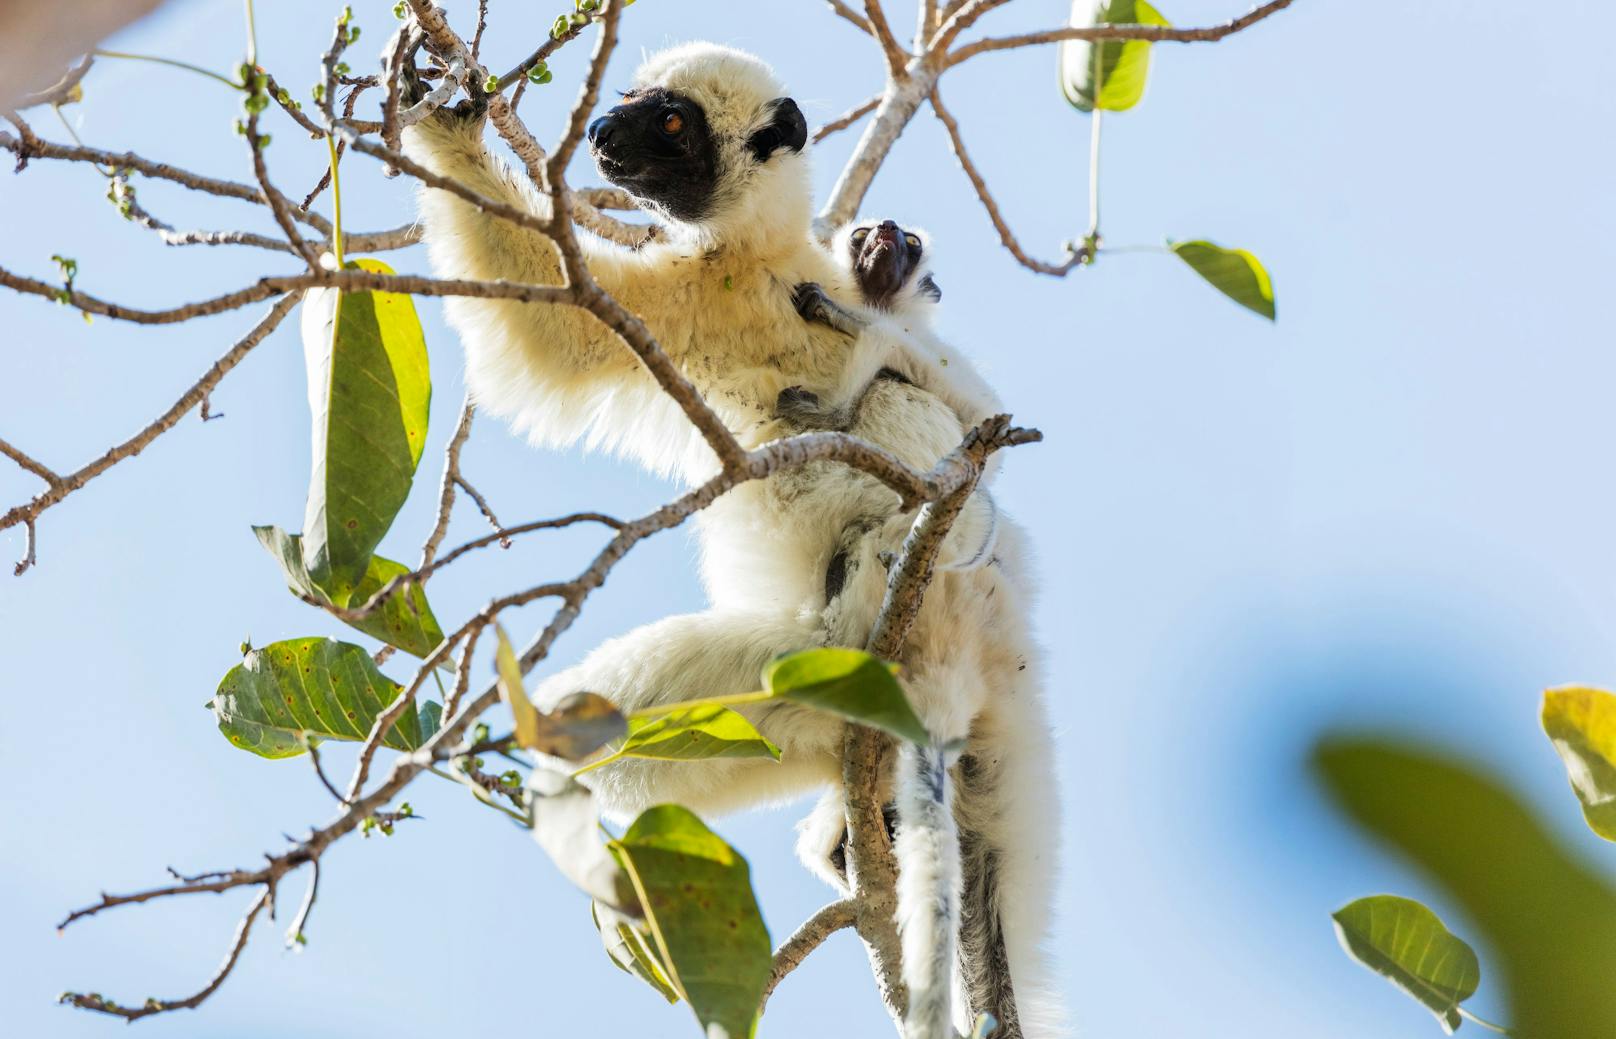 Die Lemurenart "Larvensifakas" aus Madagaskar verhüten zwar nicht, haben aber eine sehr geringe Rate an Fehlgeburten. Sie fressen in der Schwangerschaft tanninhaltige Pflanzen, die sich positiv auf die Fötenentwicklung auswirken. <br>